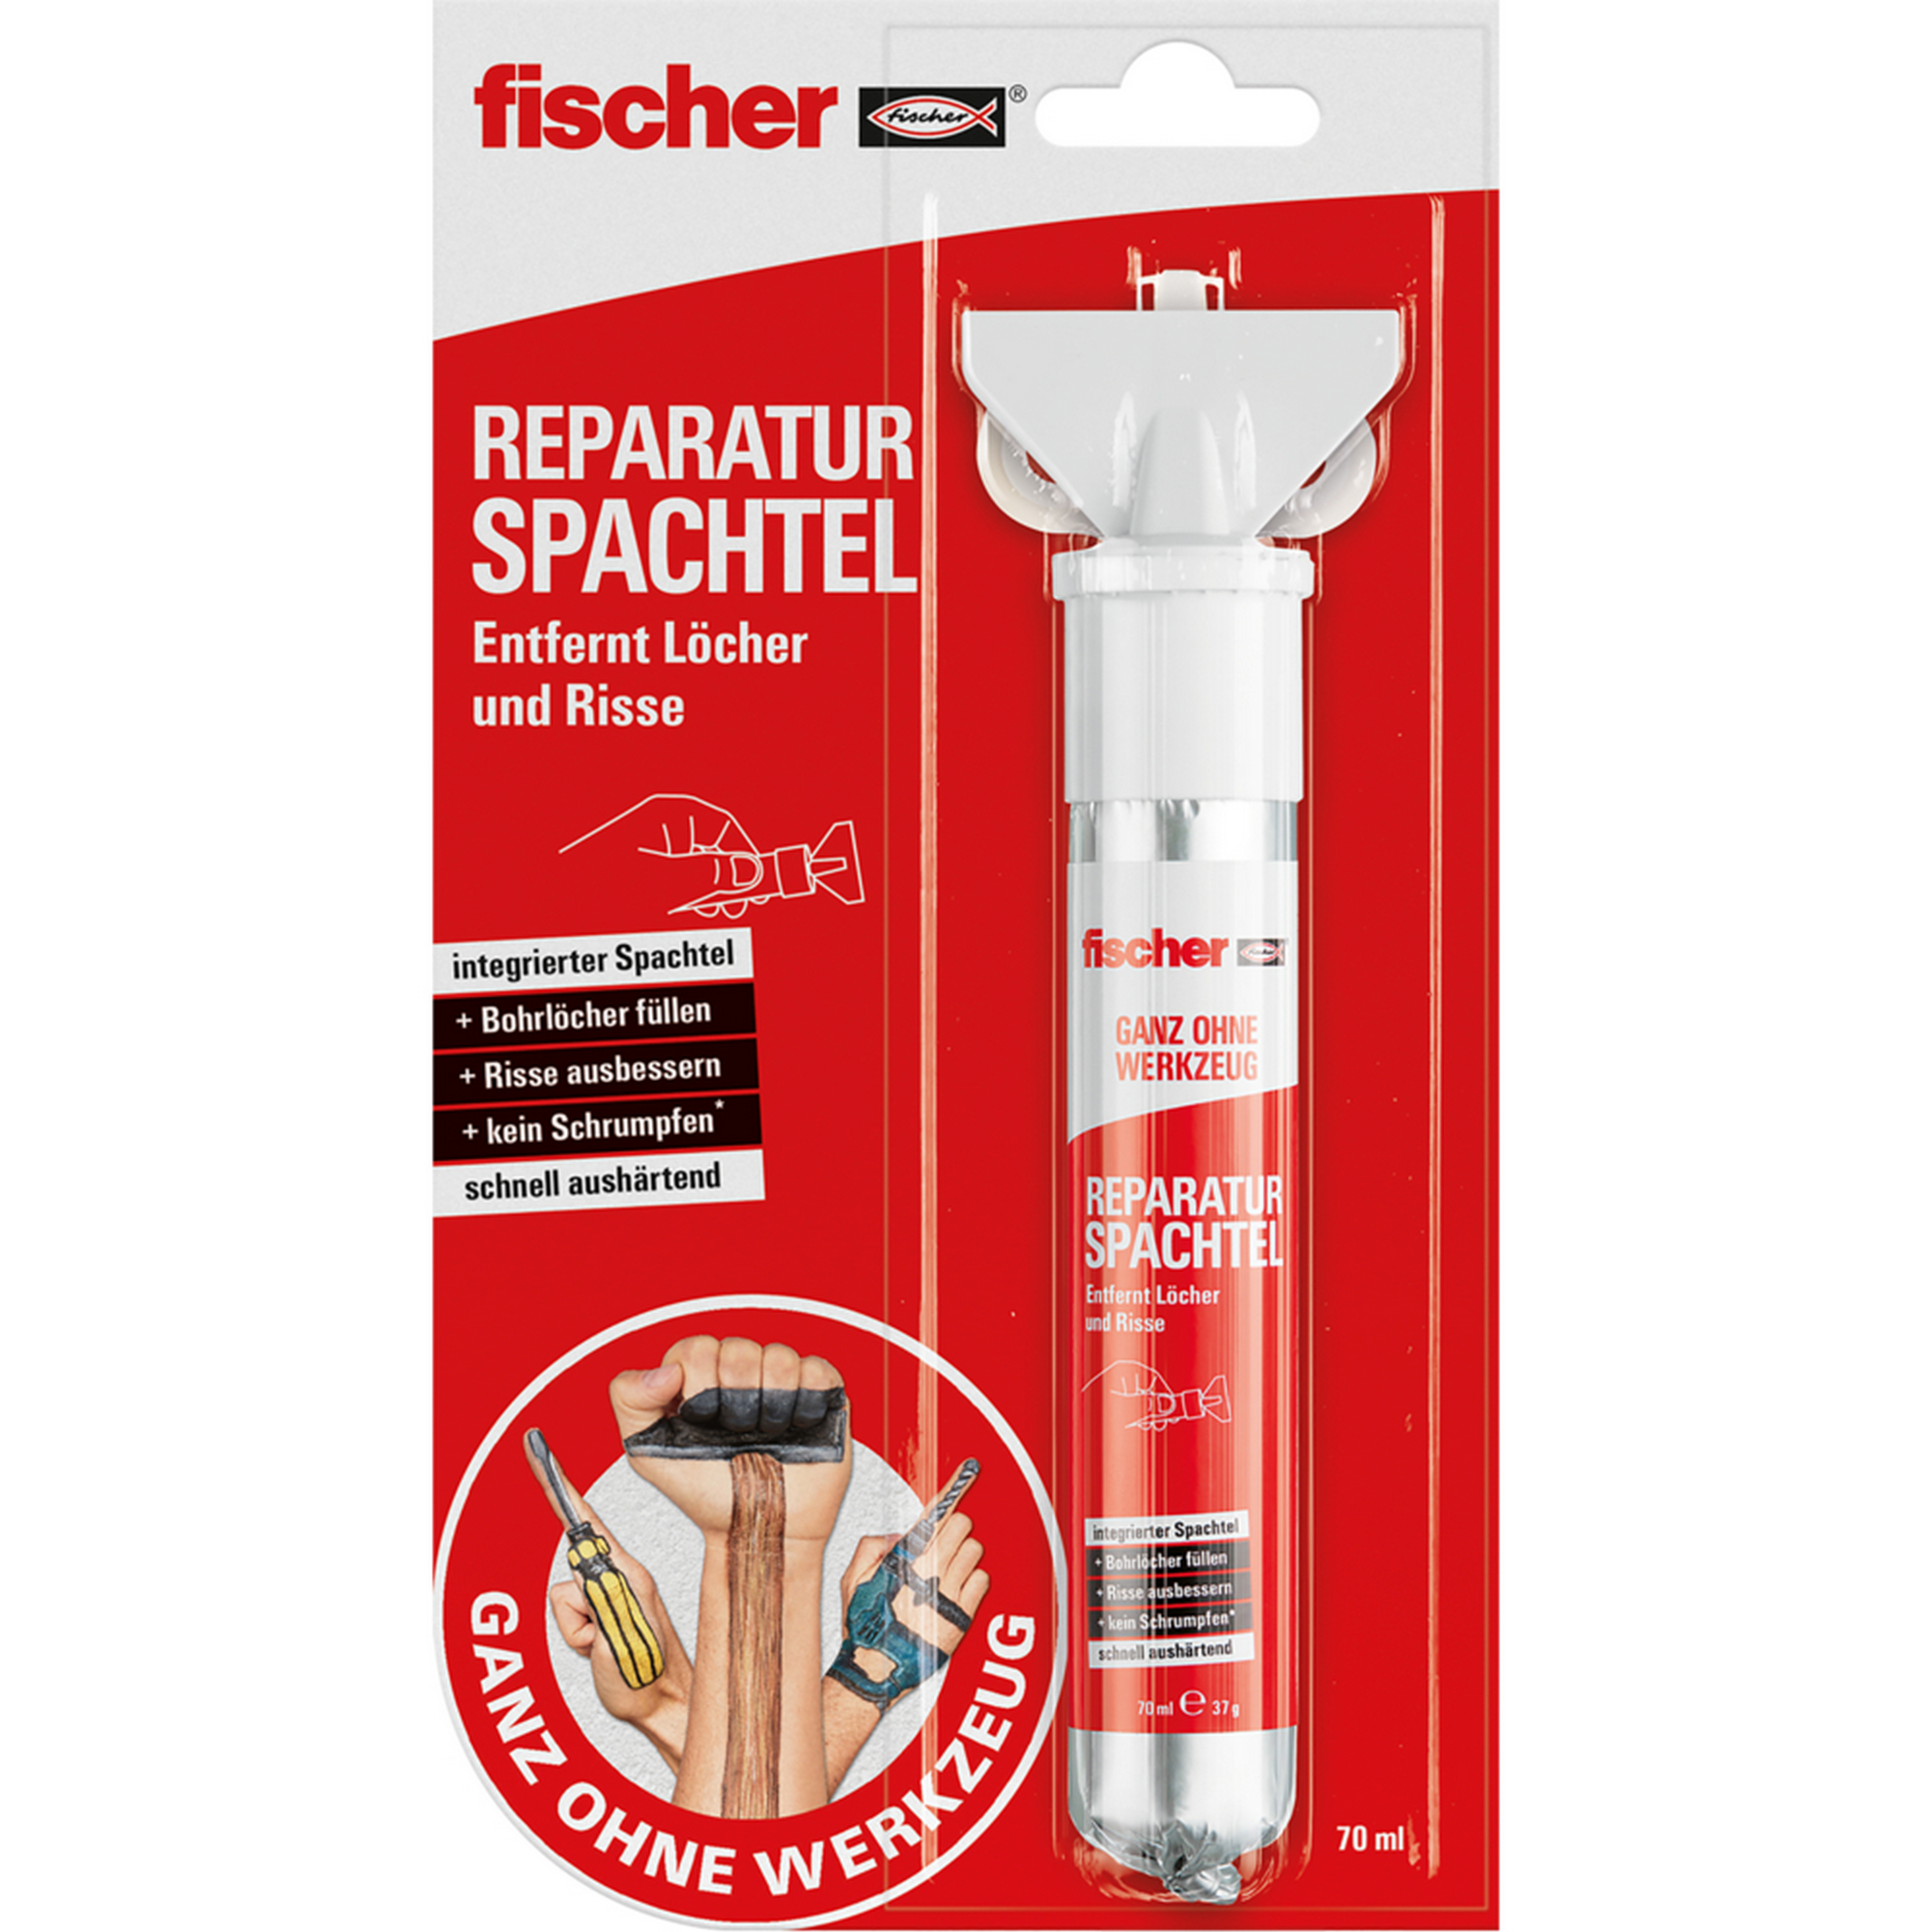 Reparatur-Spachtelmasse 'Ganz ohne Werkzeug' mit Spachtel 70 ml + product picture